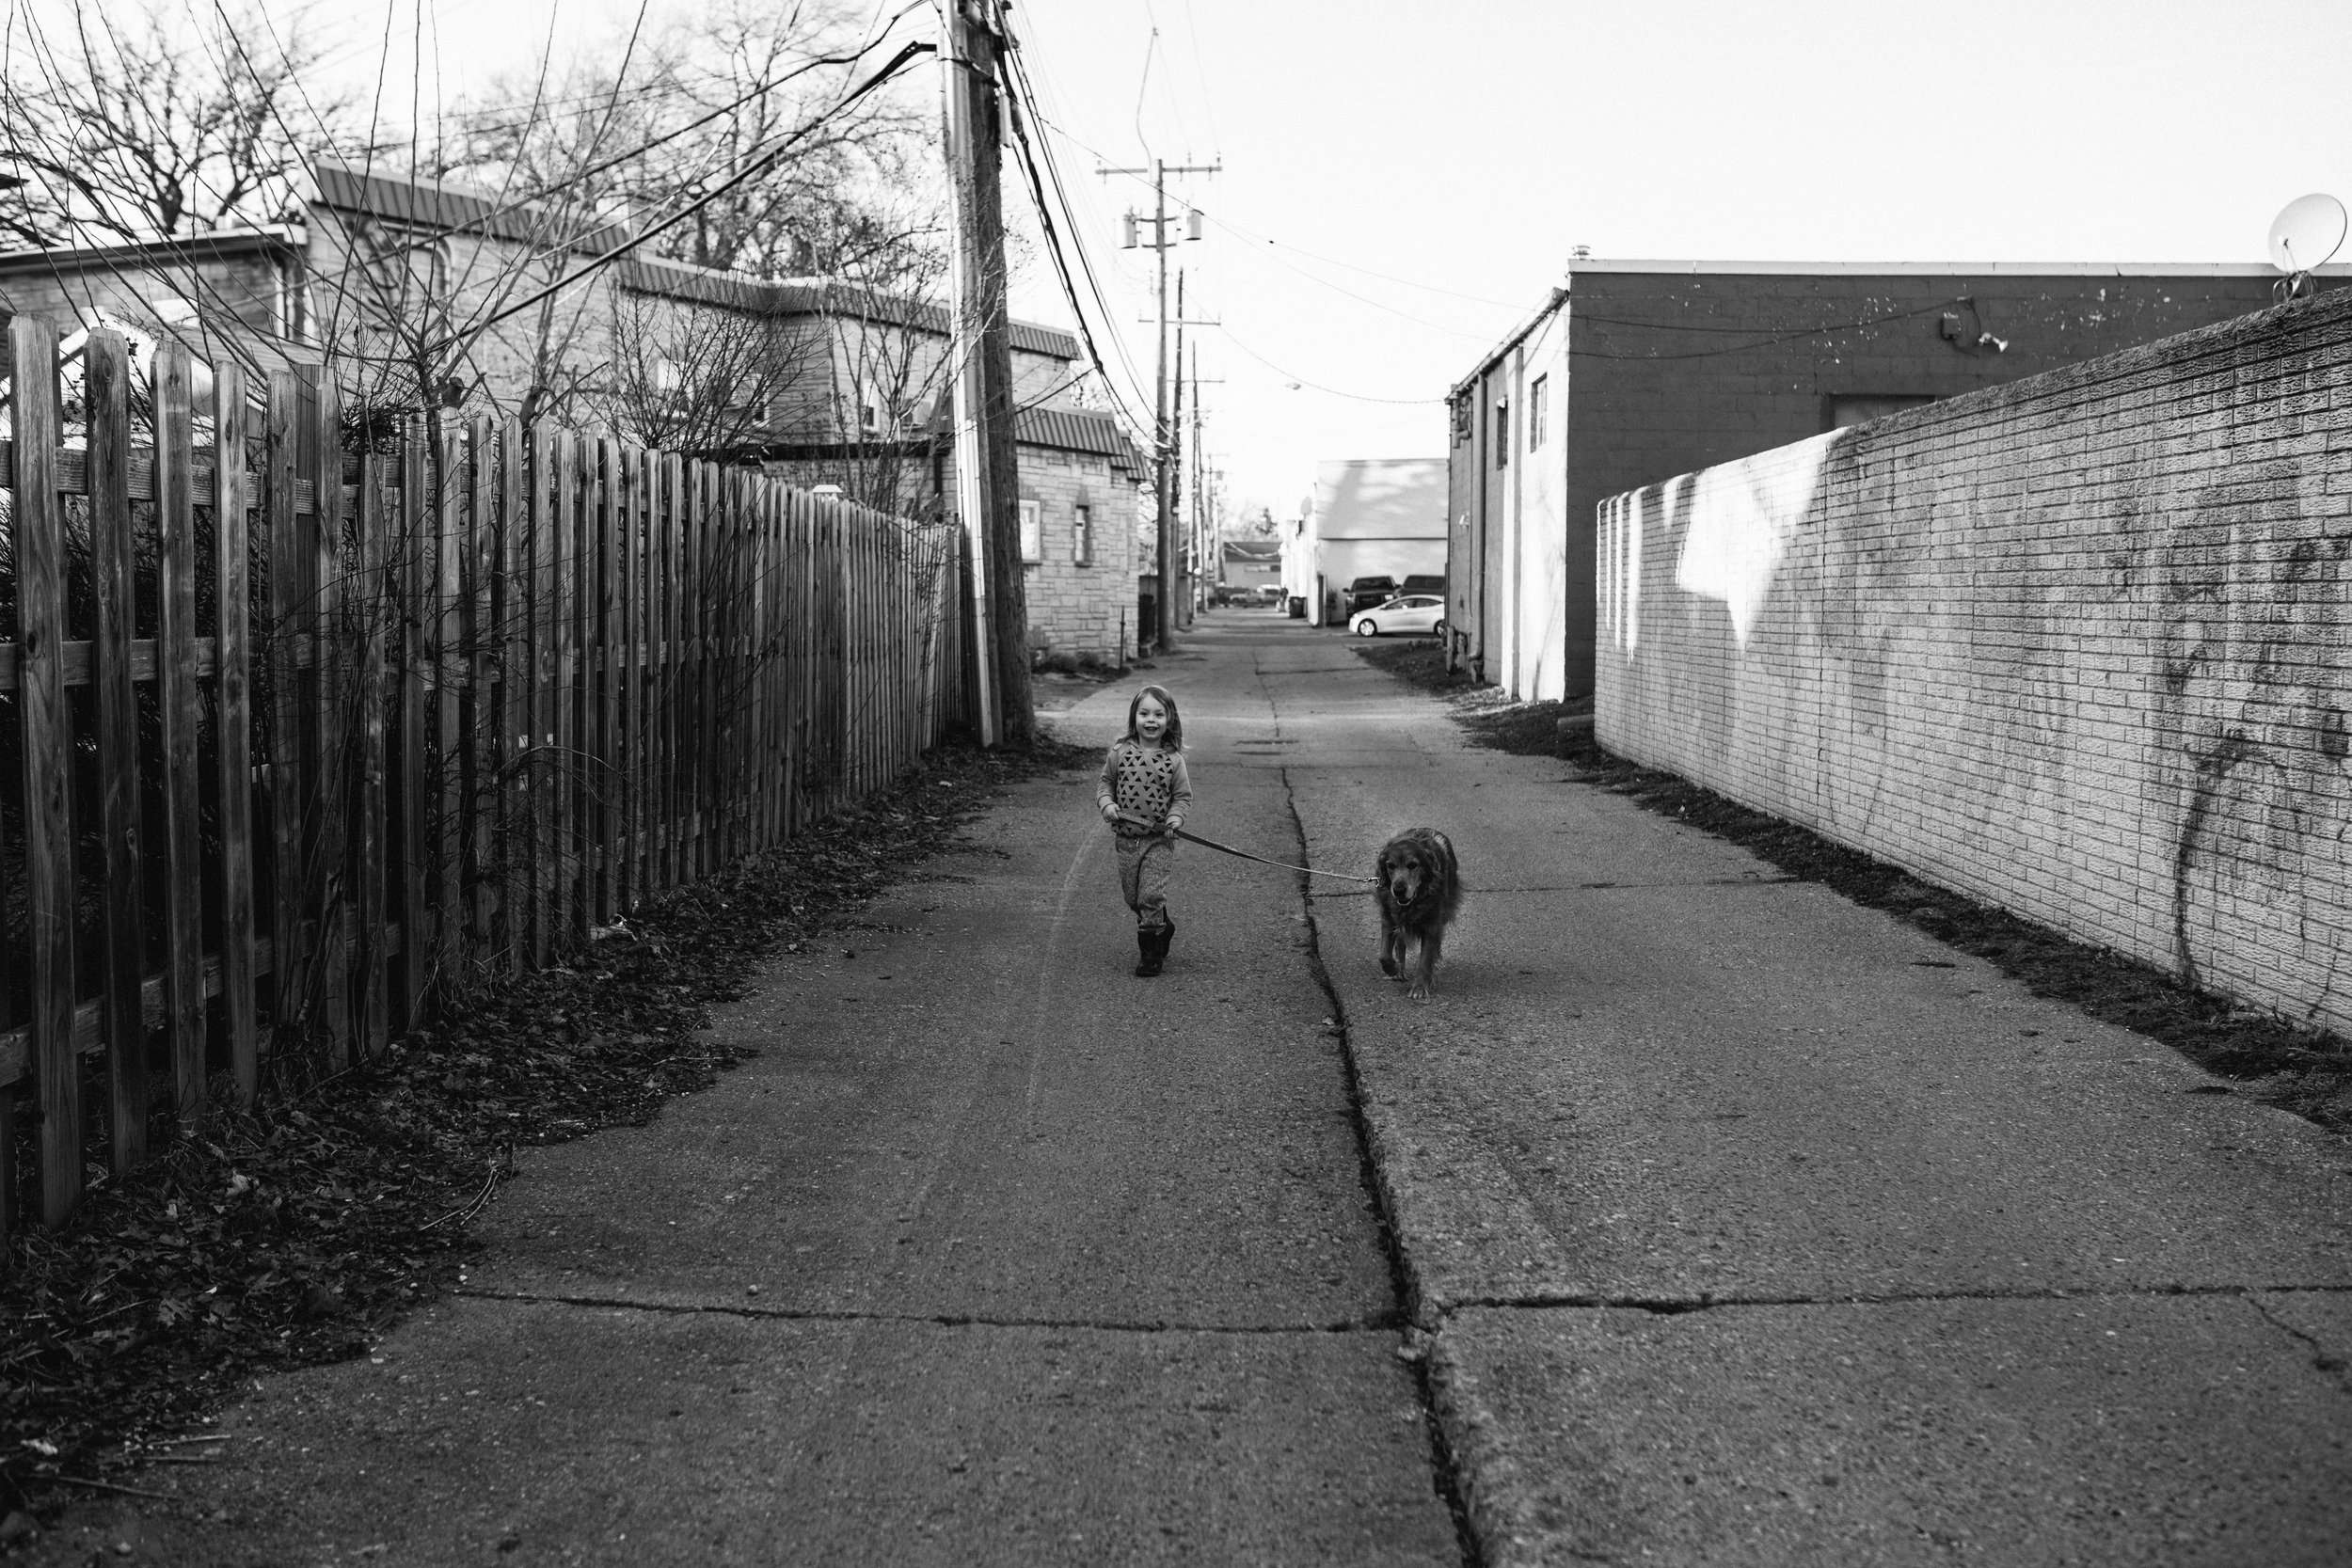 Little boy walking dogs in alley.